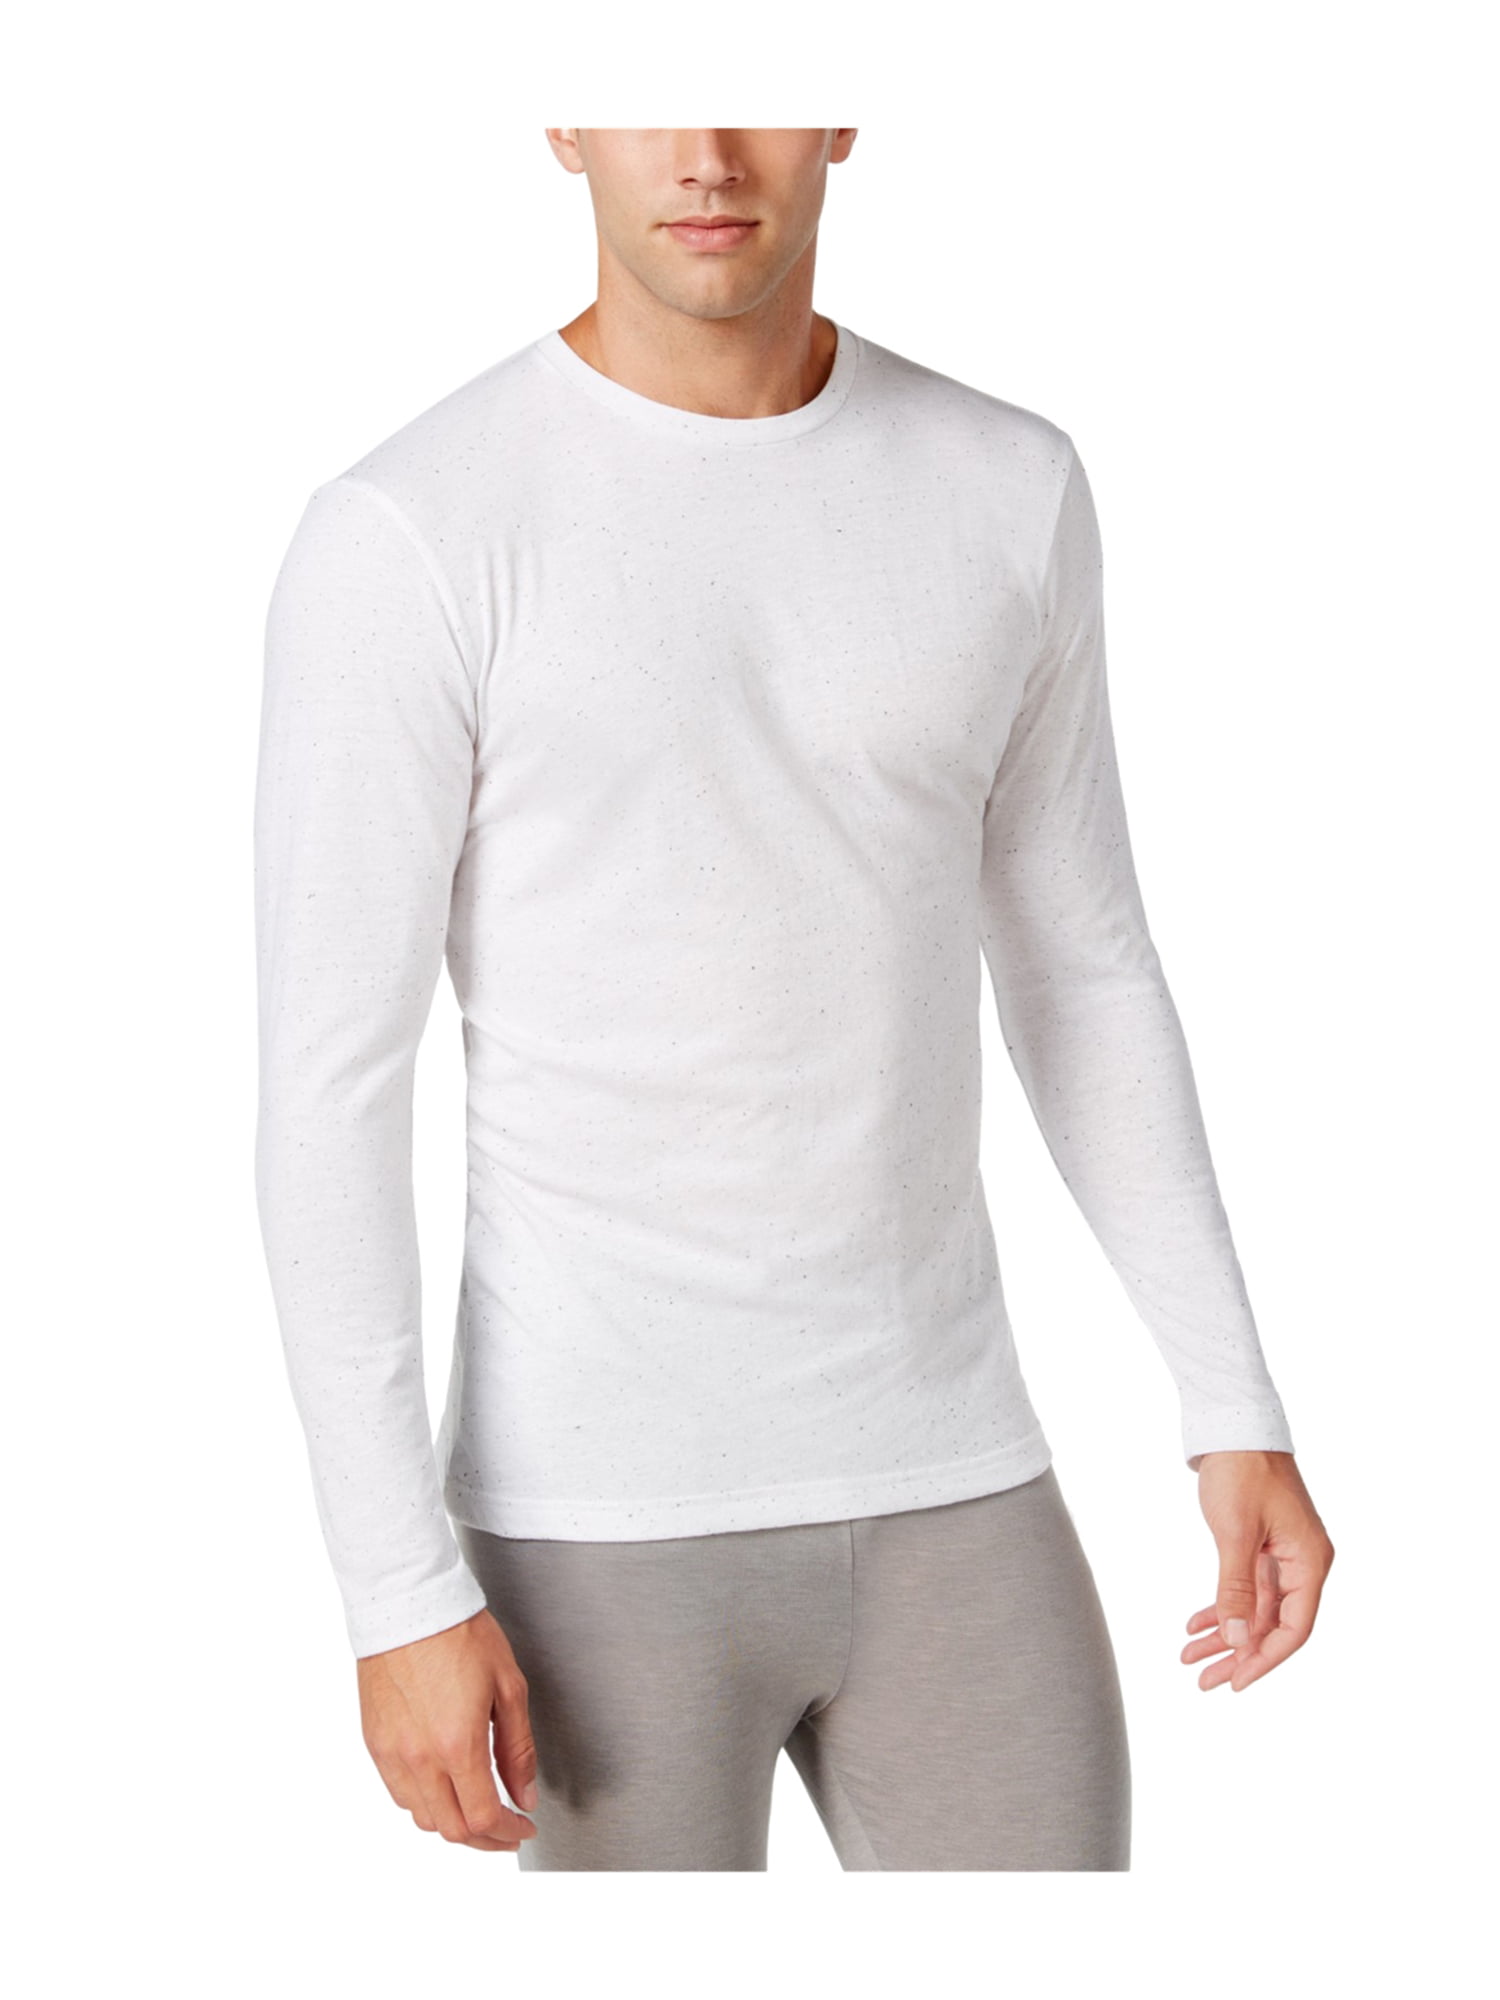 Alfani Long Sleeve White T-shirt Mens Size Large New 